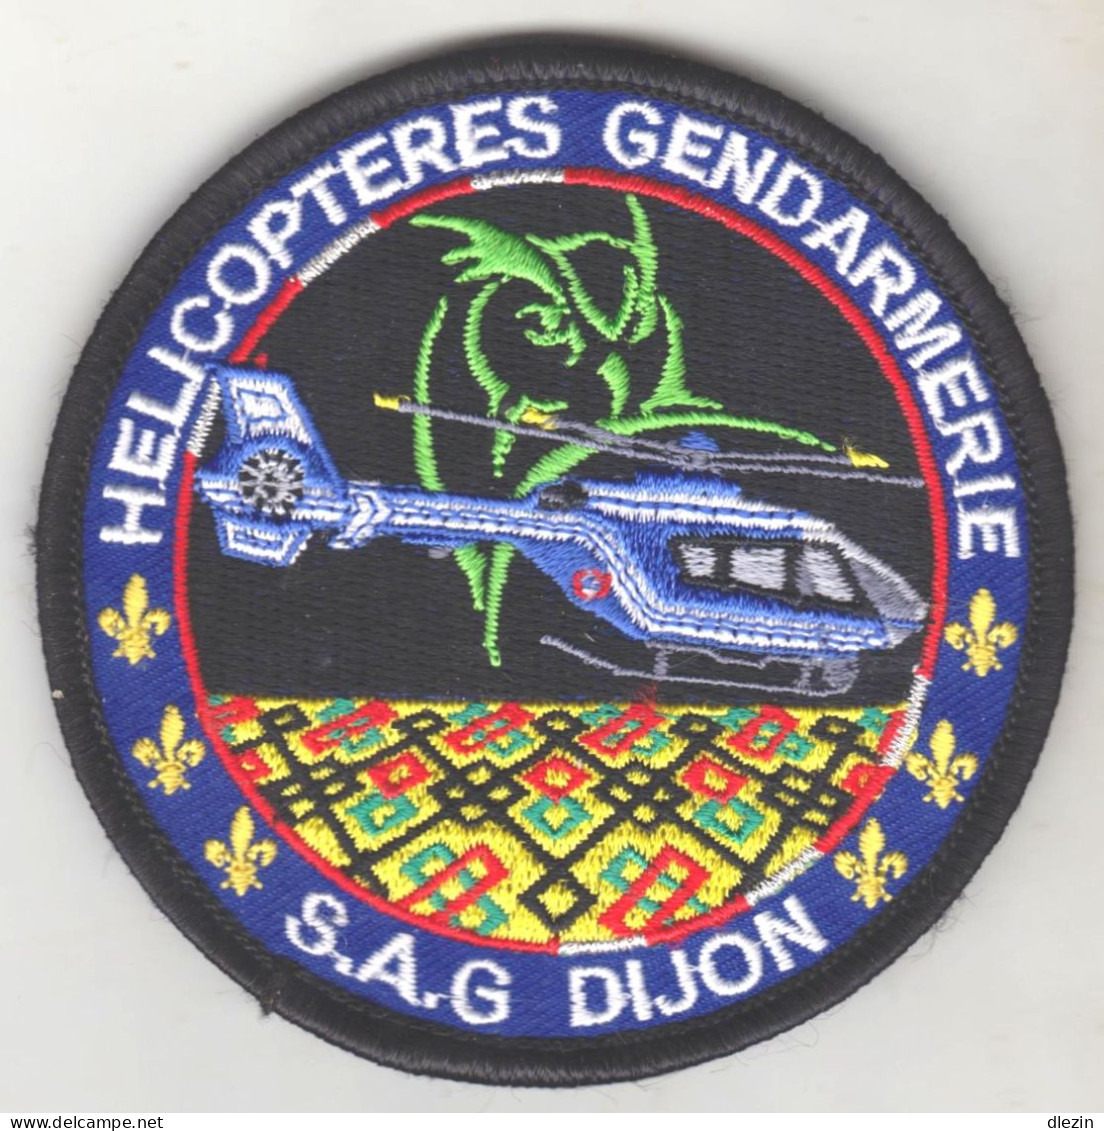 Hélicoptère Gendarmerie. SAG. Dijon. Titre D'épaule Velcro. - Esercito